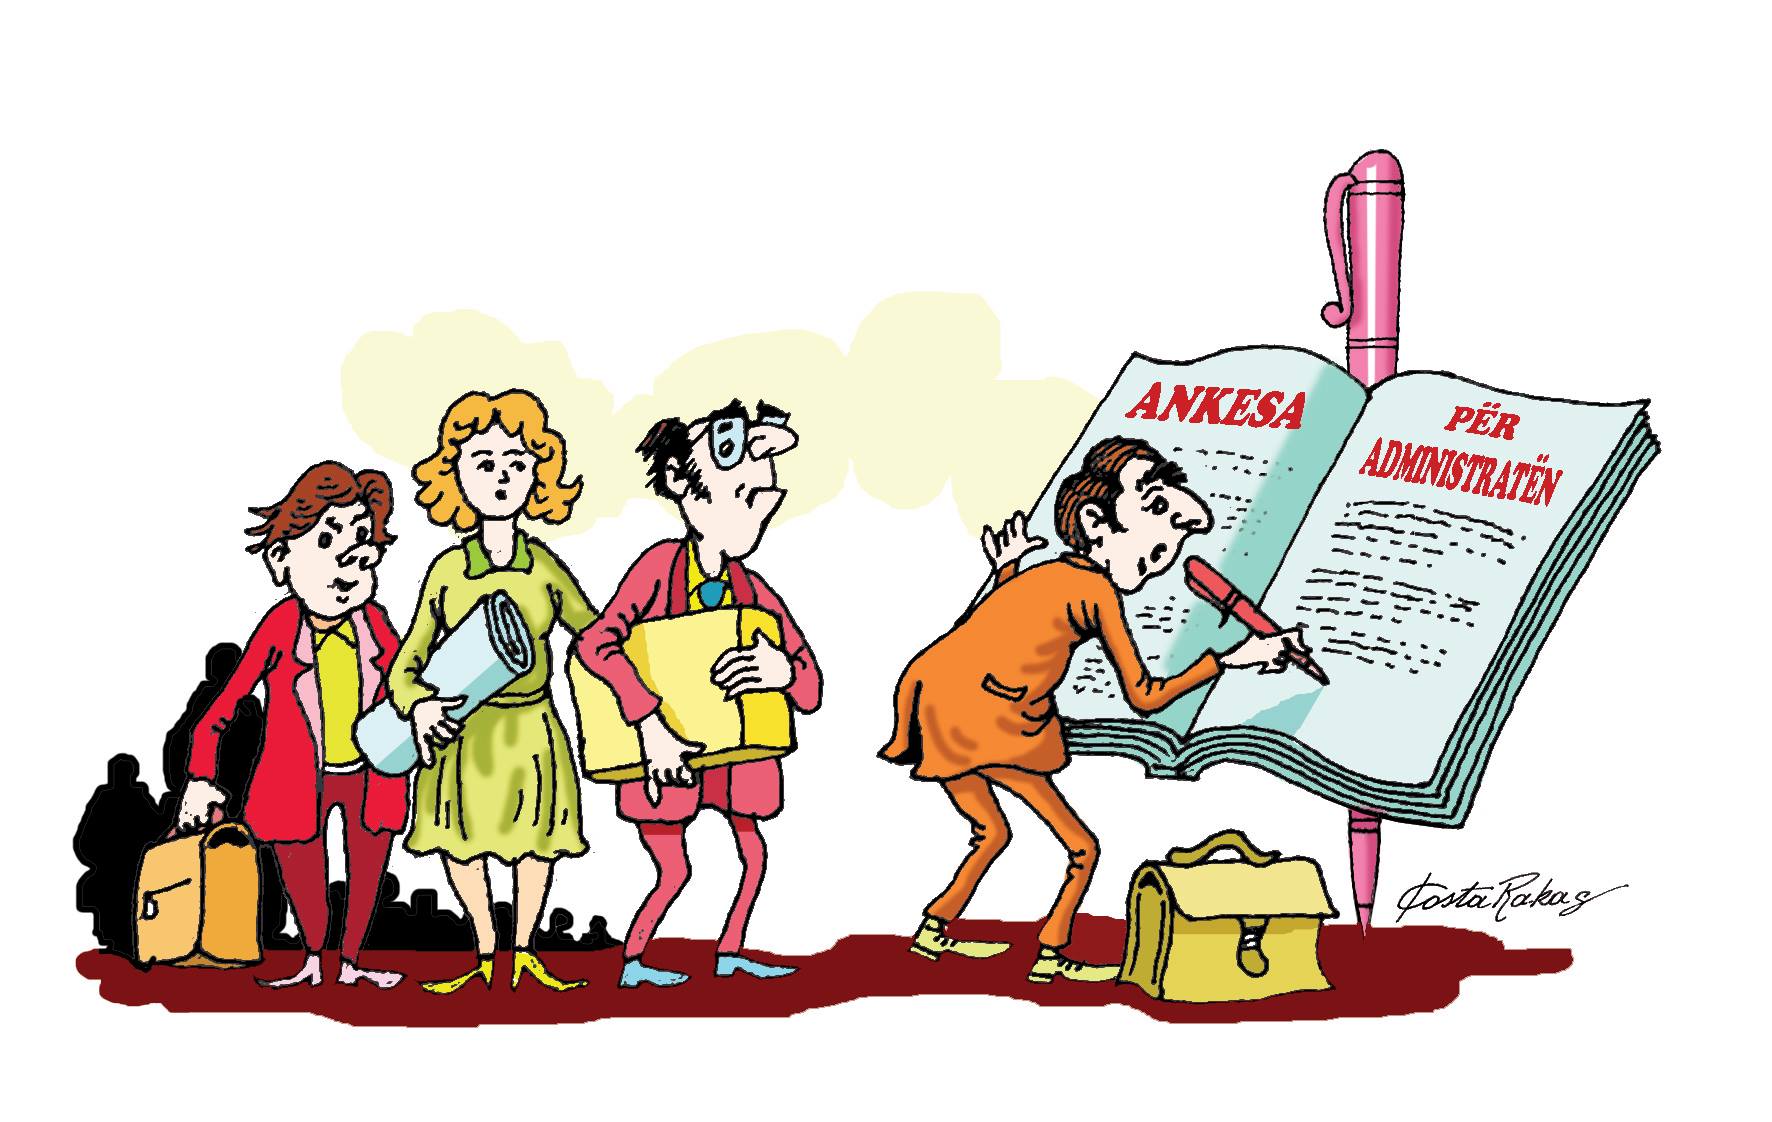 Karikatura e ditës në Albanian Free Press nga Kosta Raka (16 gusht 2017)